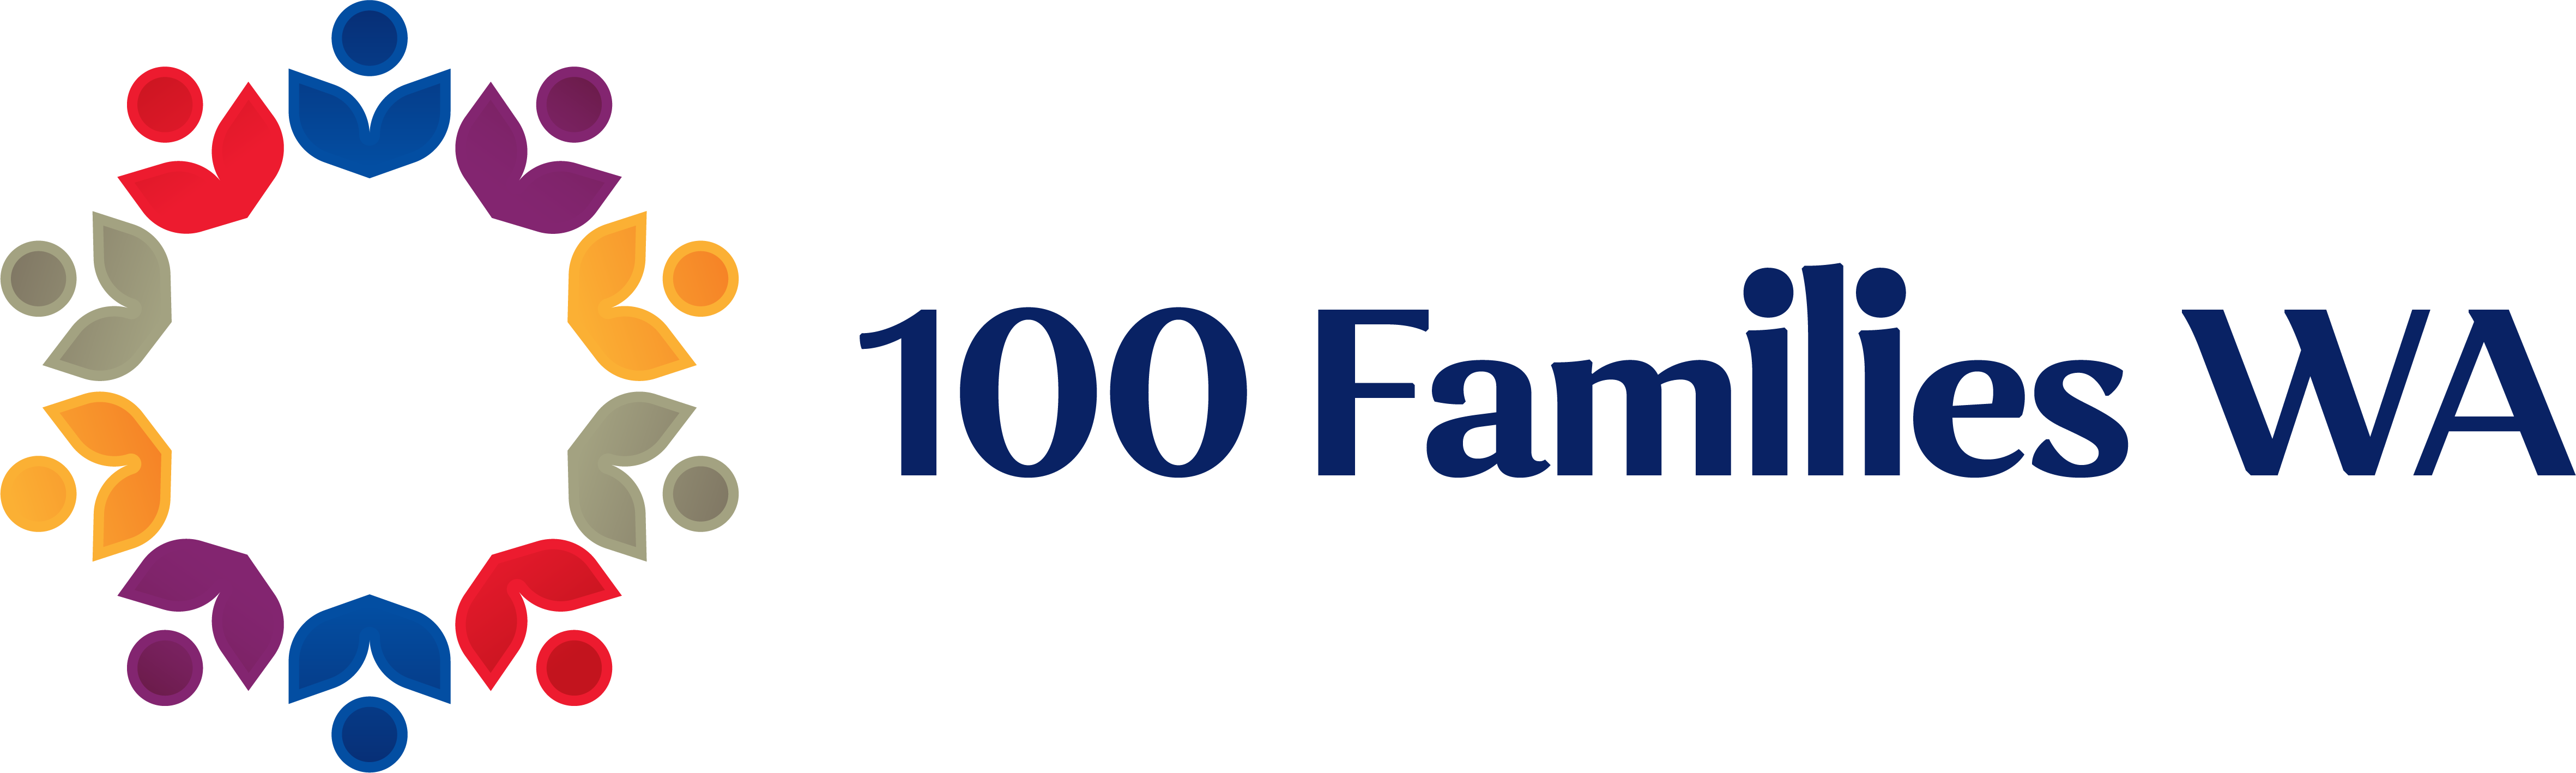 100 Families WA